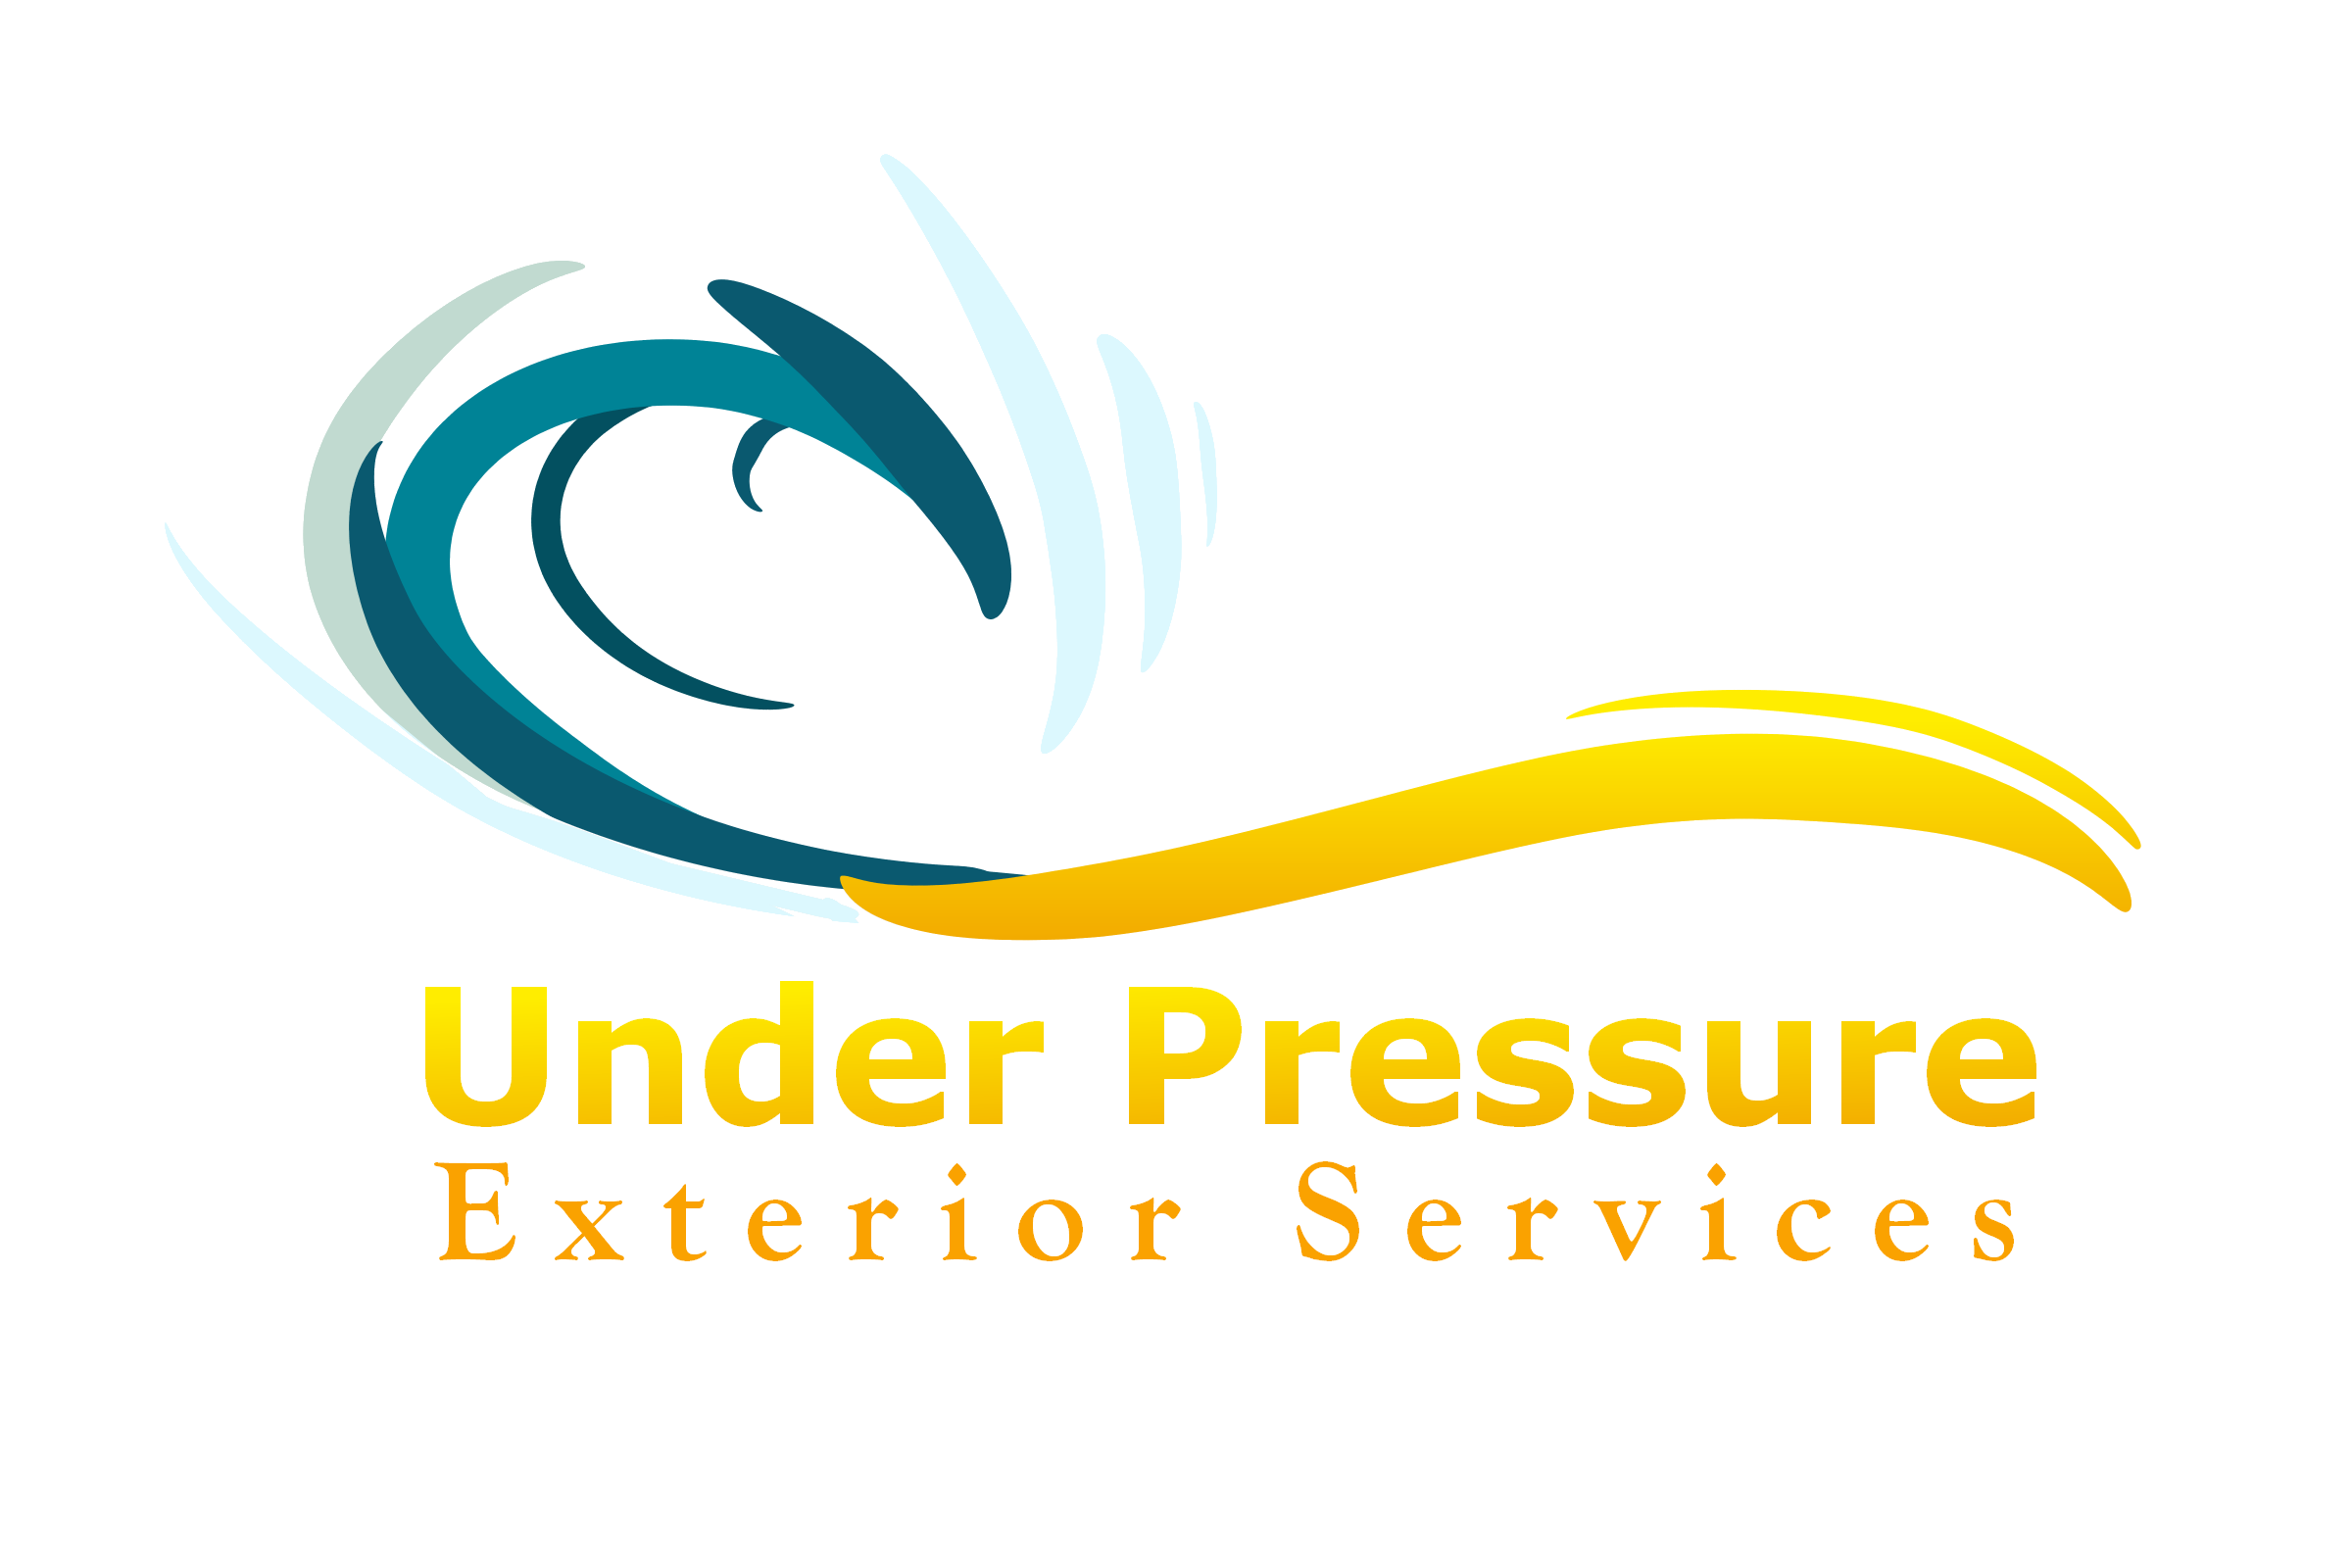 UnderPressure Services